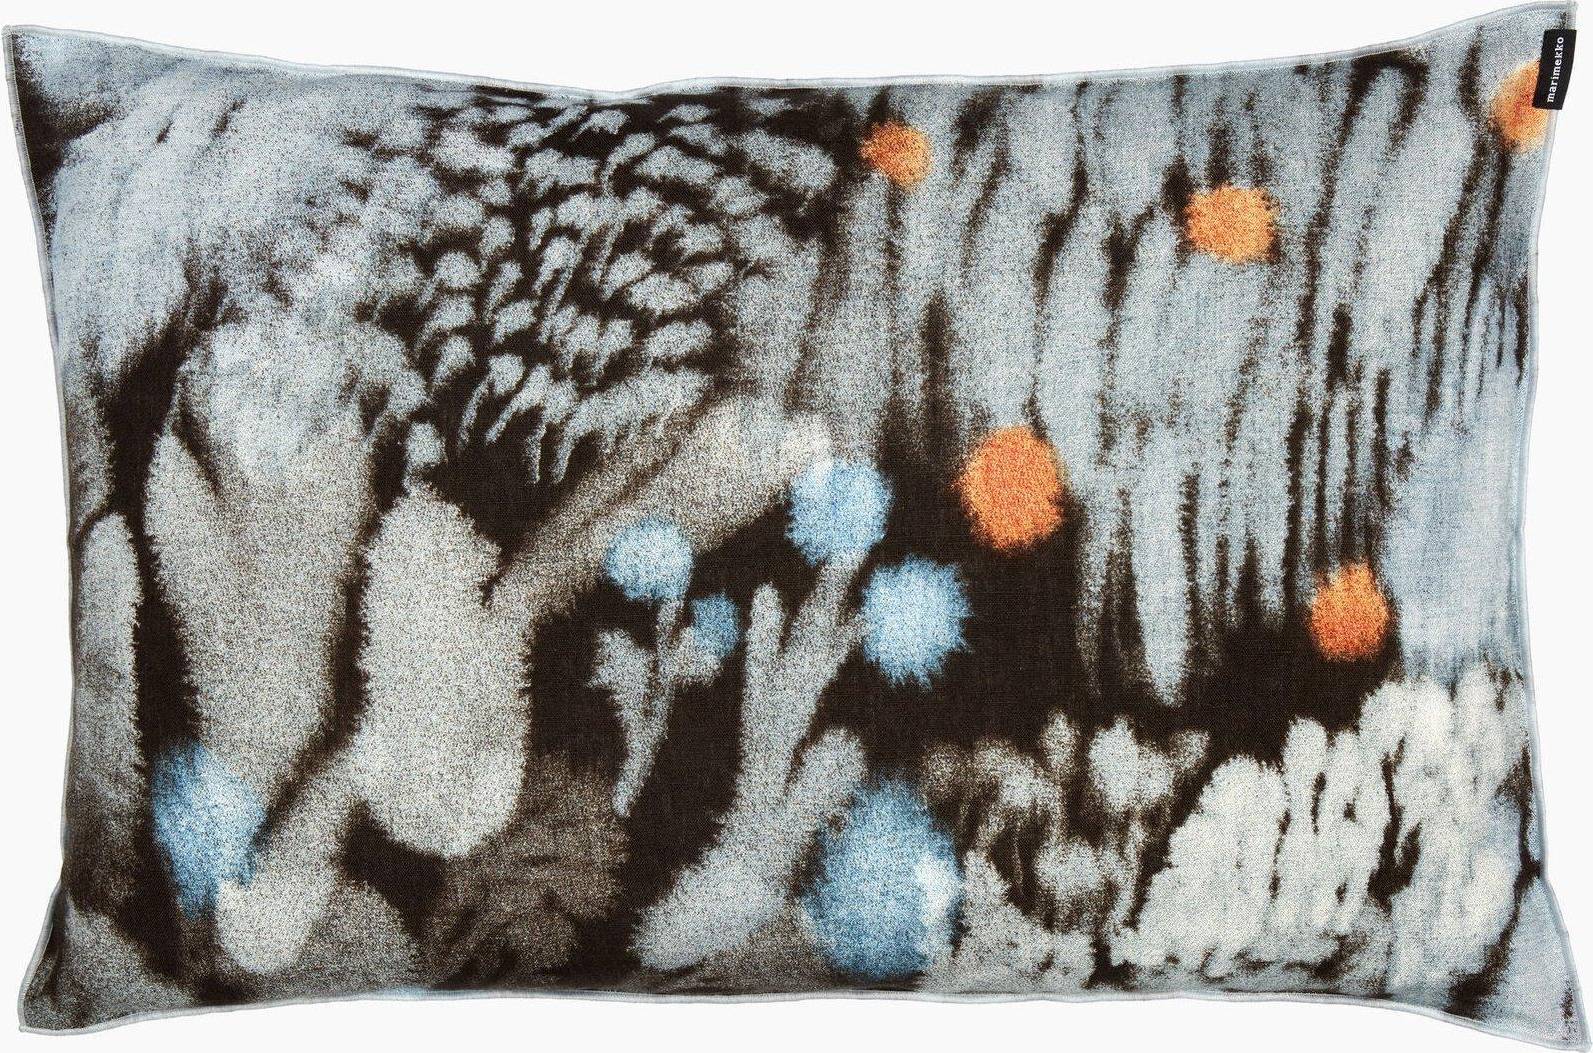  Bild på Marimekko Kuisma Kuddöverdrag Blå, Brun, Orange (60x40cm) prydnadskudde